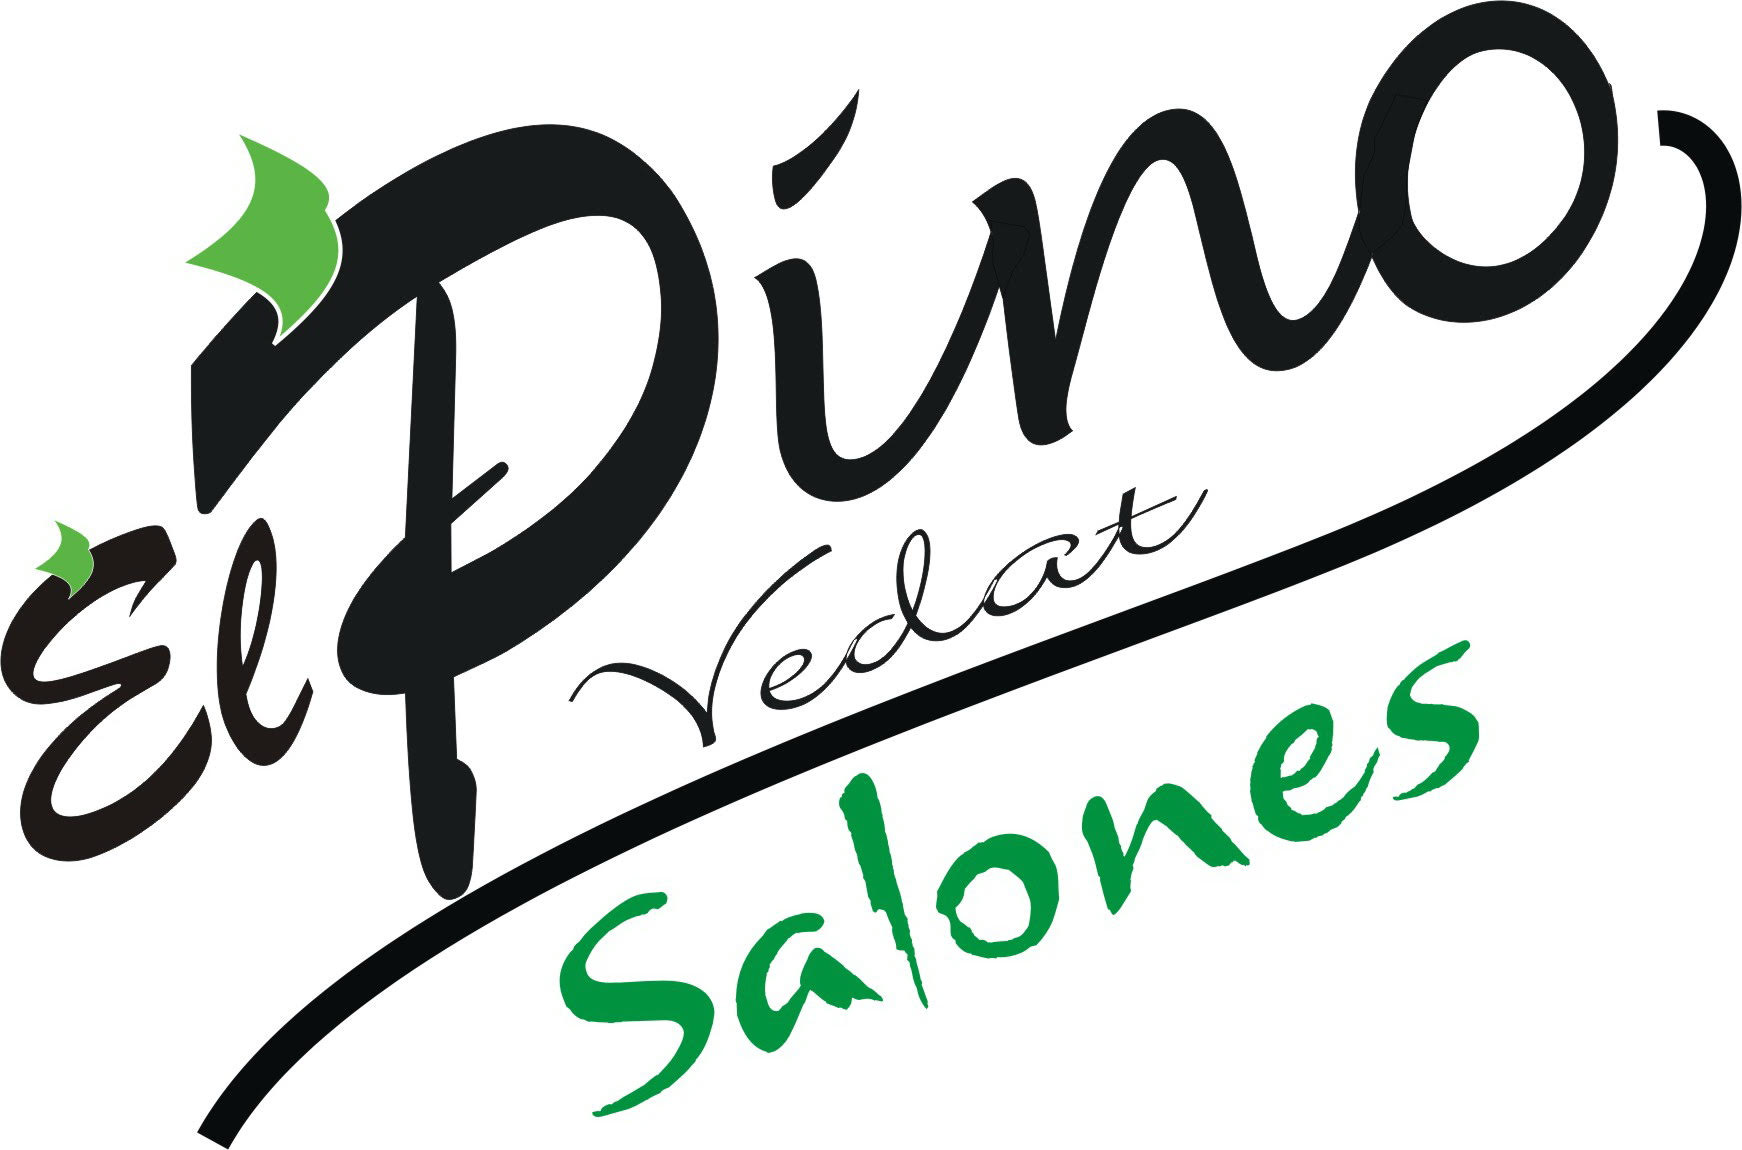 ELPINO - Pino Vedat